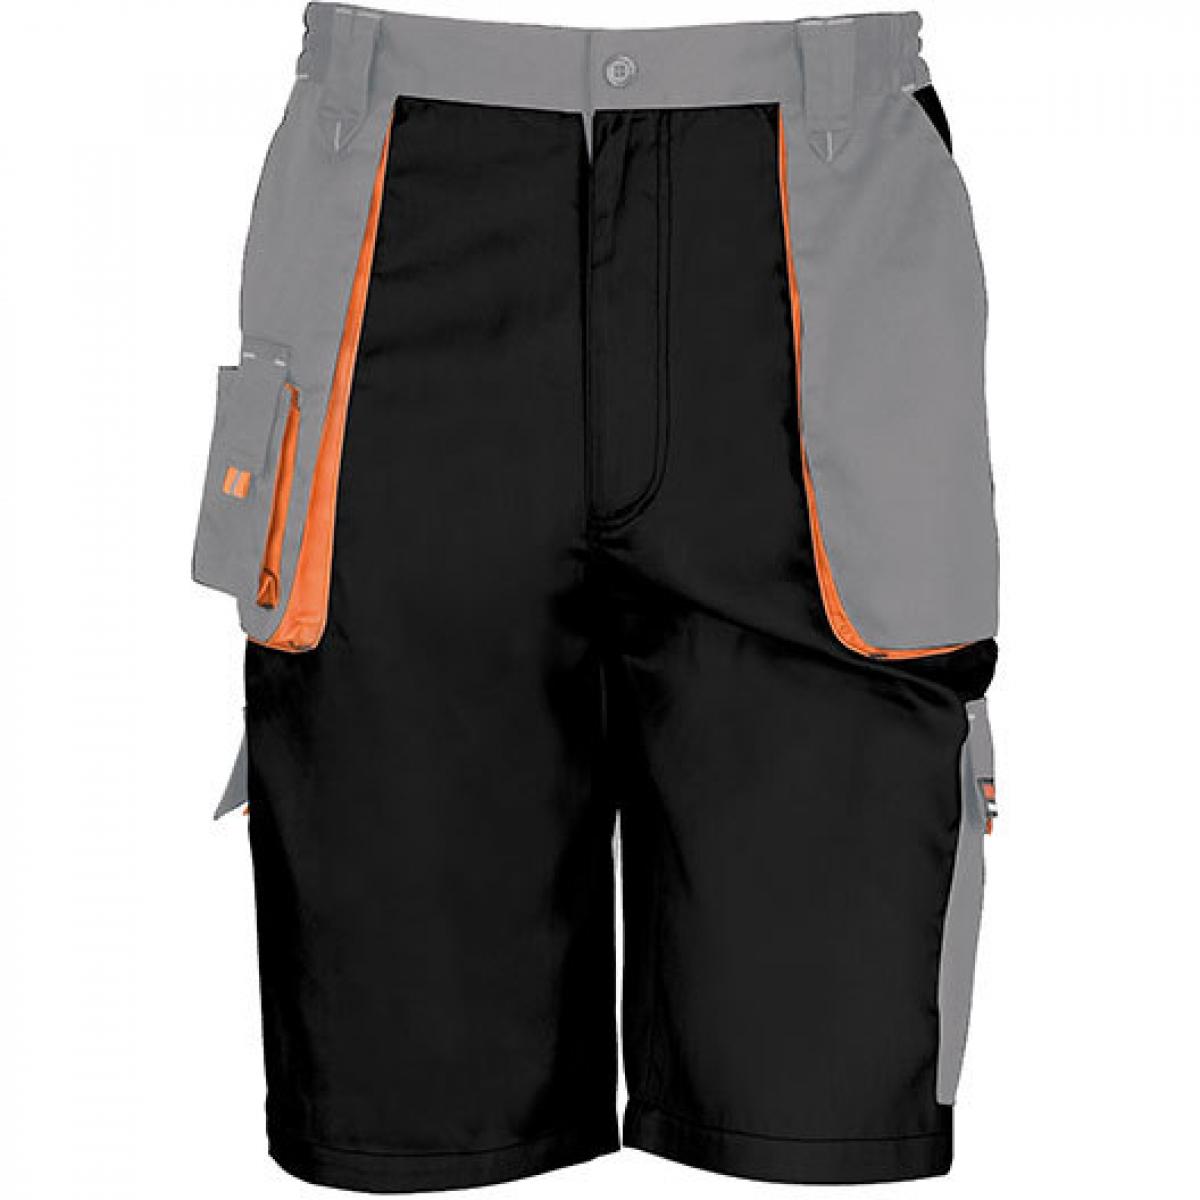 Hersteller: Result WORK-GUARD Herstellernummer: R319X Artikelbezeichnung: Herren Work-Guard Lite Shorts Farbe: Black/Grey/Orange